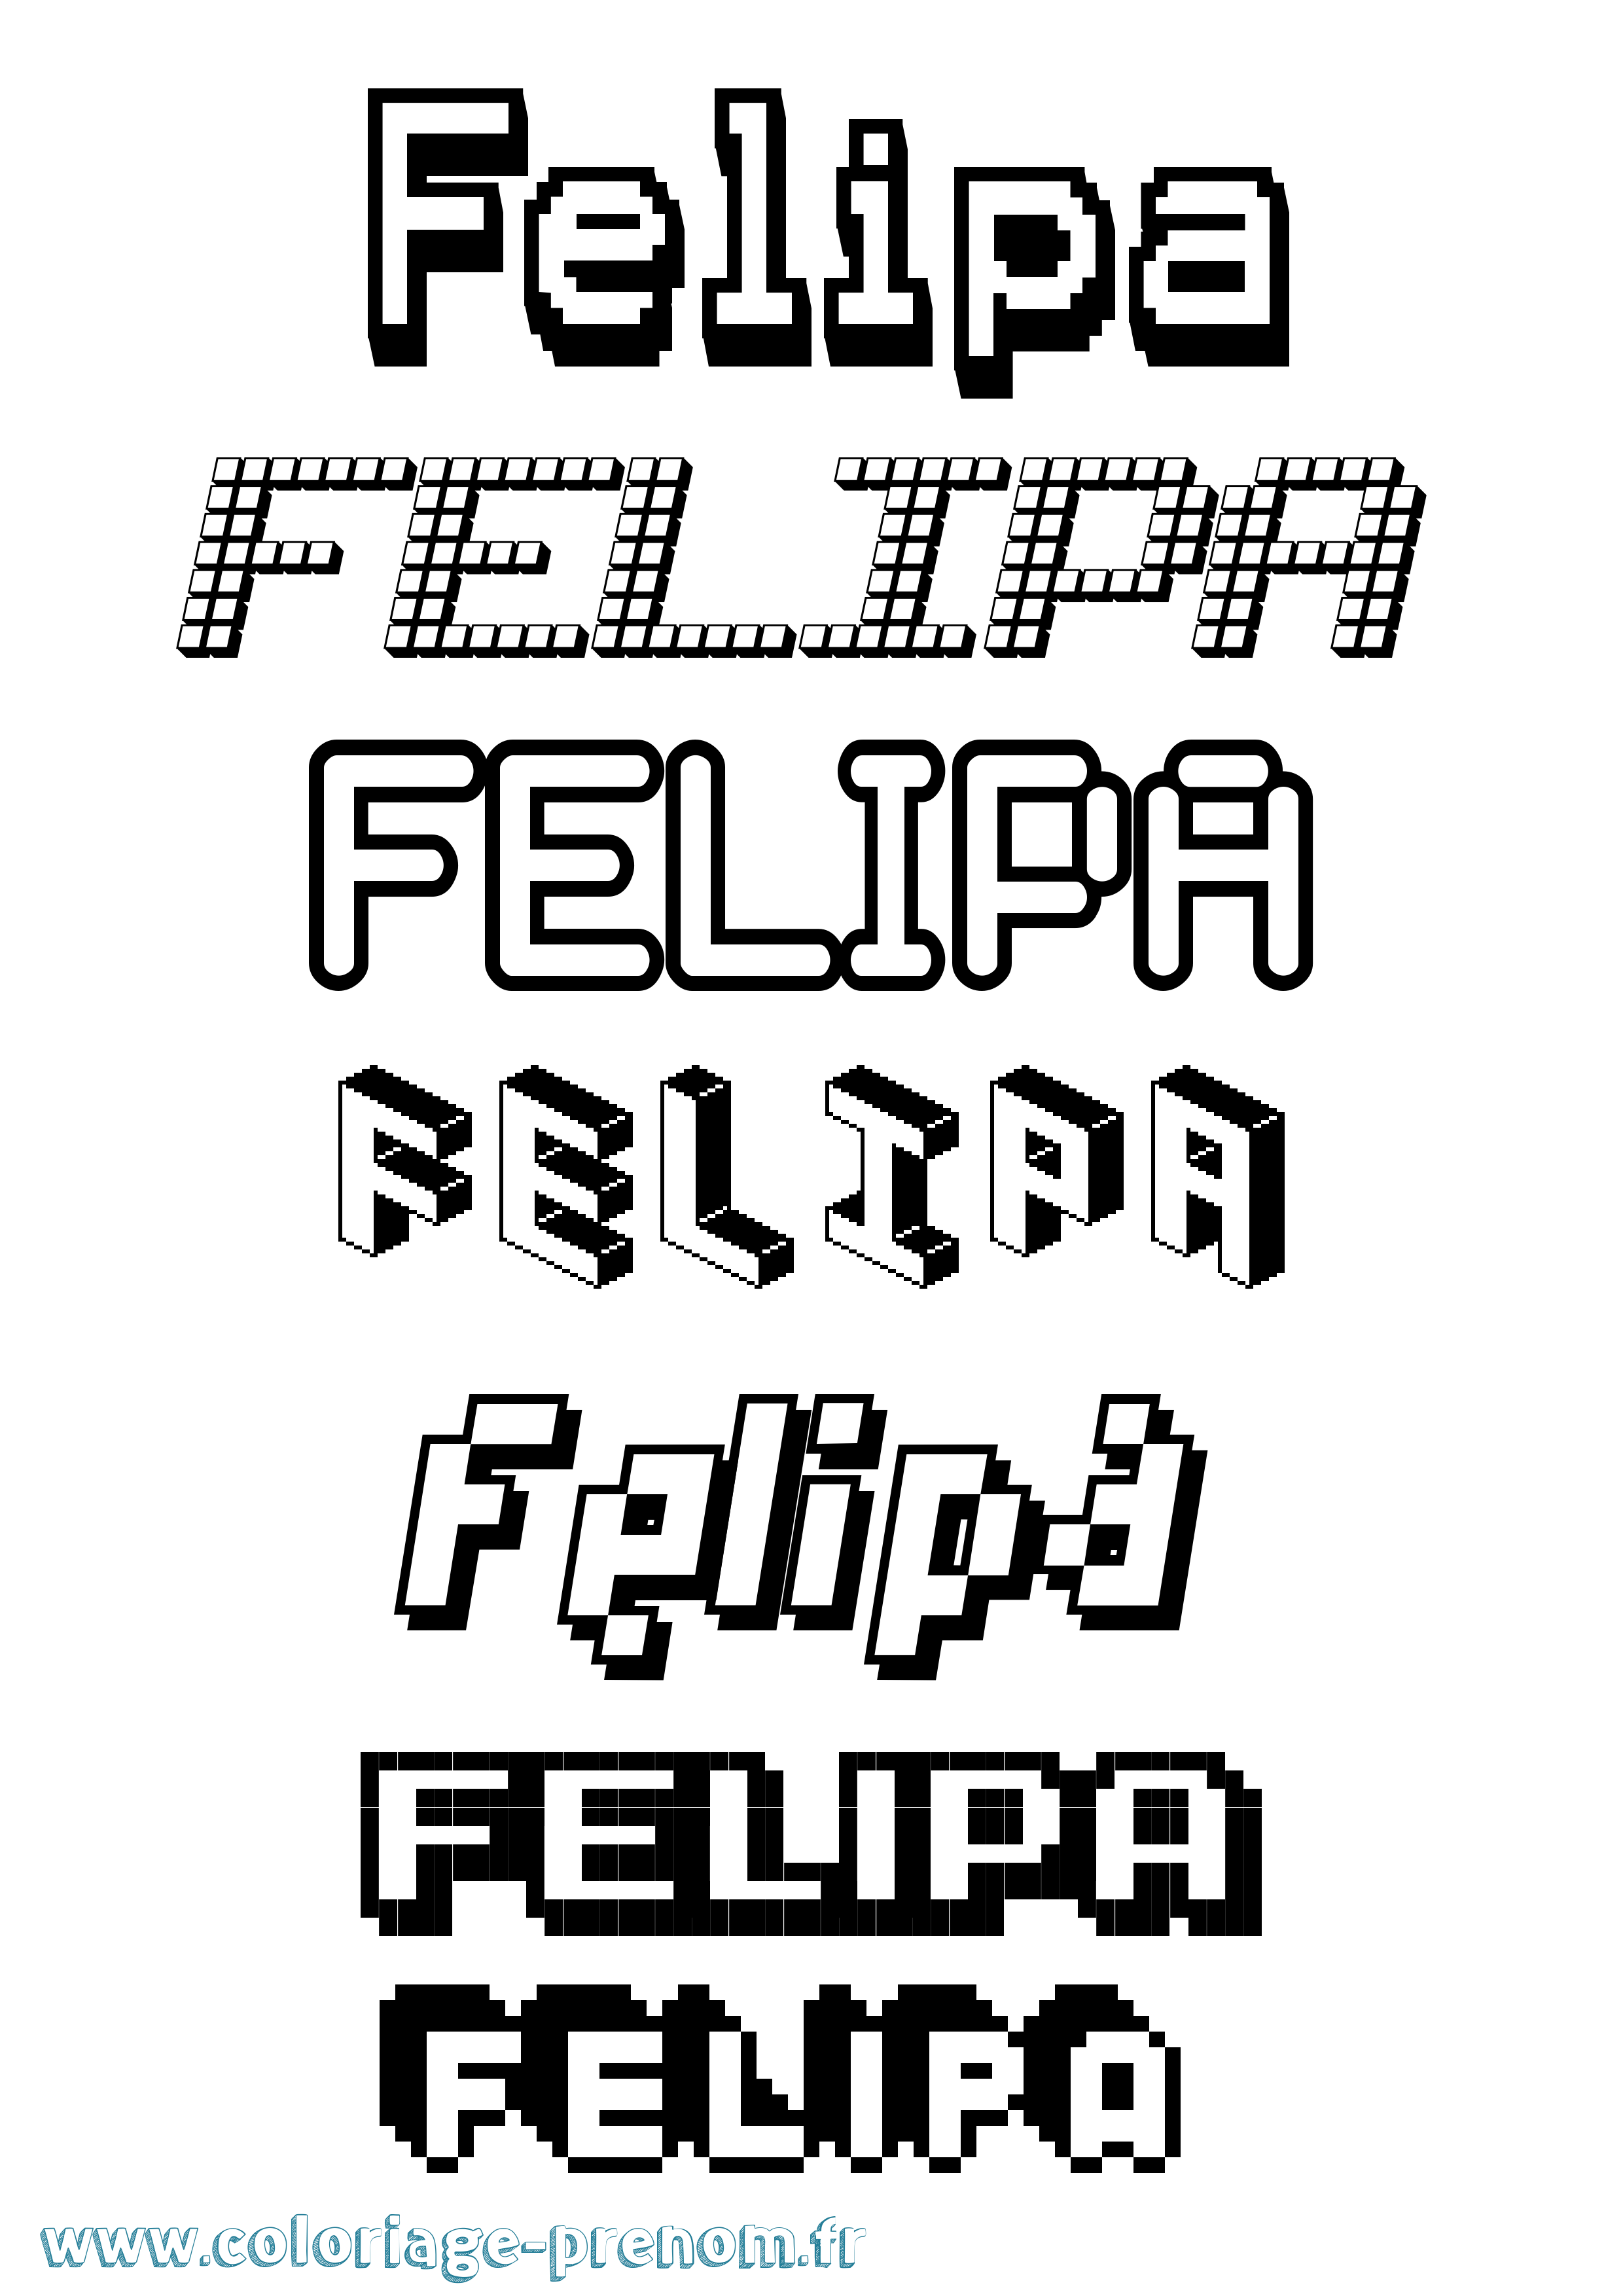 Coloriage prénom Felipa Pixel